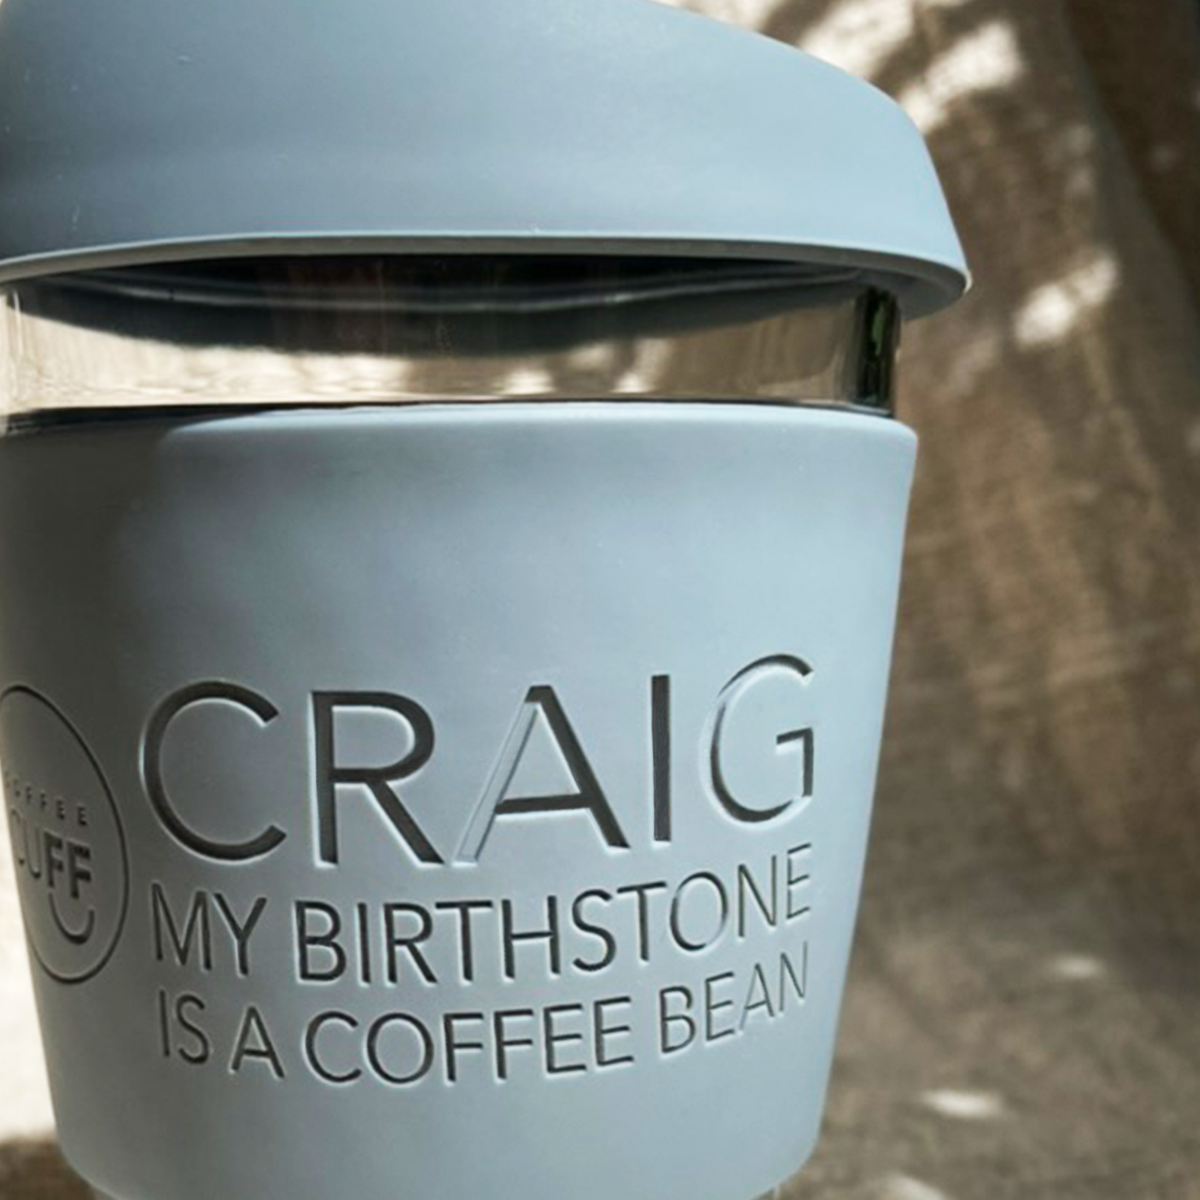 craig_my_birthstone_coffee_bean_grey_coffee_cup